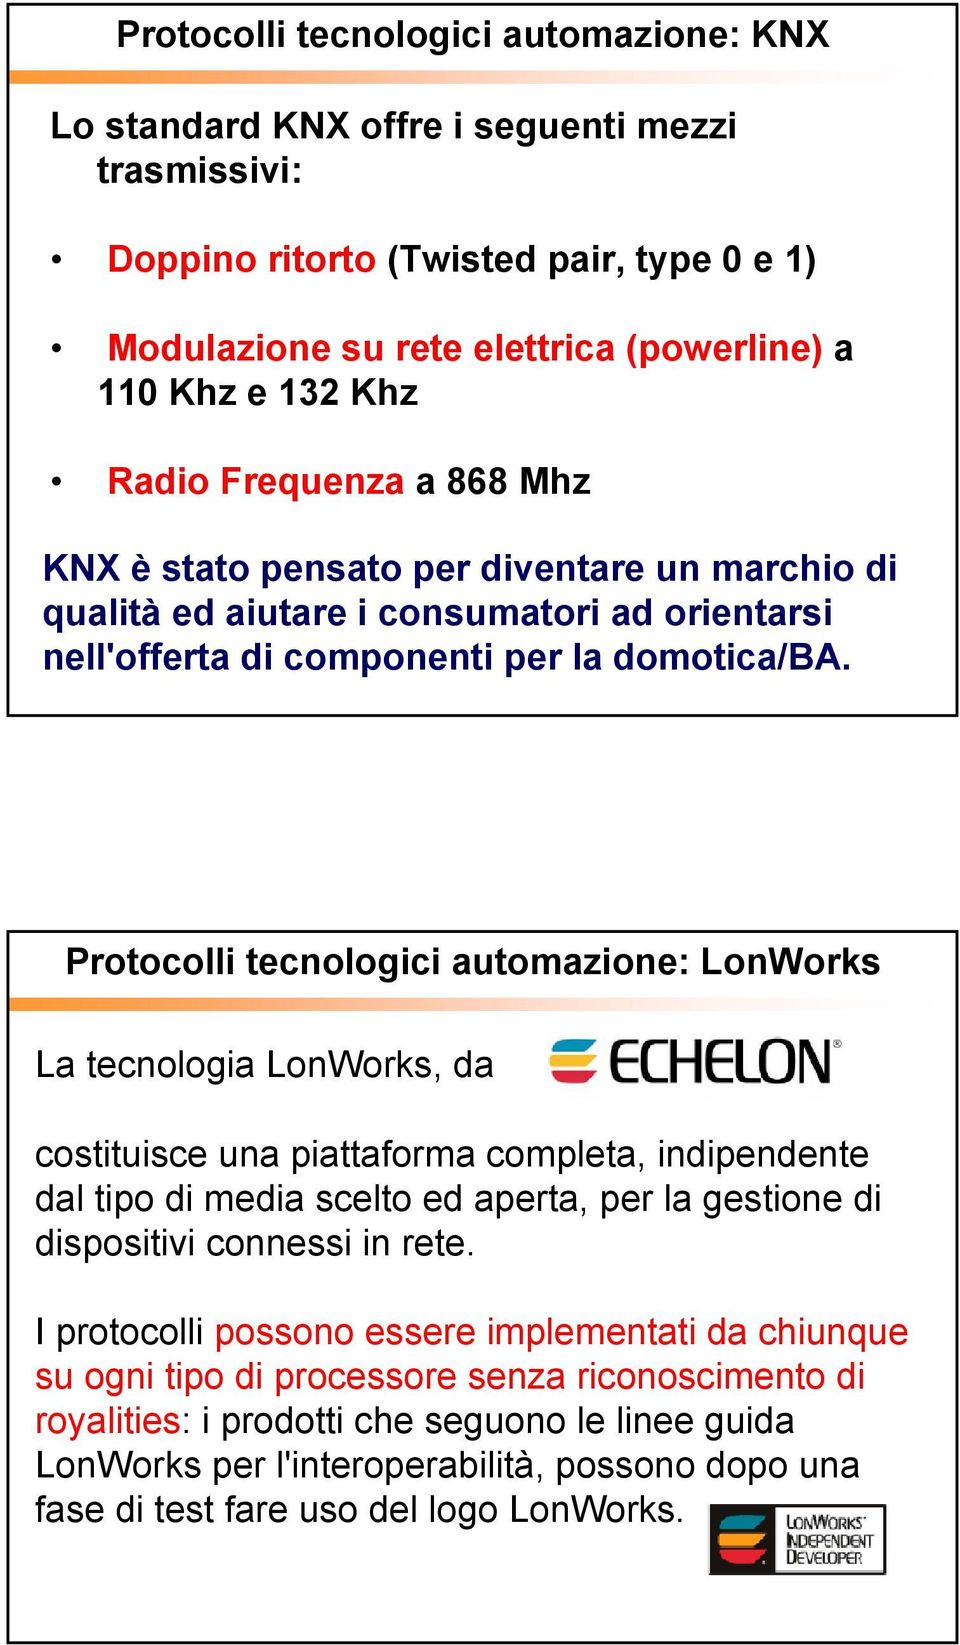 Protocolli tecnologici automazione: LonWorks La tecnologia LonWorks, da costituisce una piattaforma completa, indipendente dal tipo di media scelto ed aperta, per la gestione di dispositivi connessi